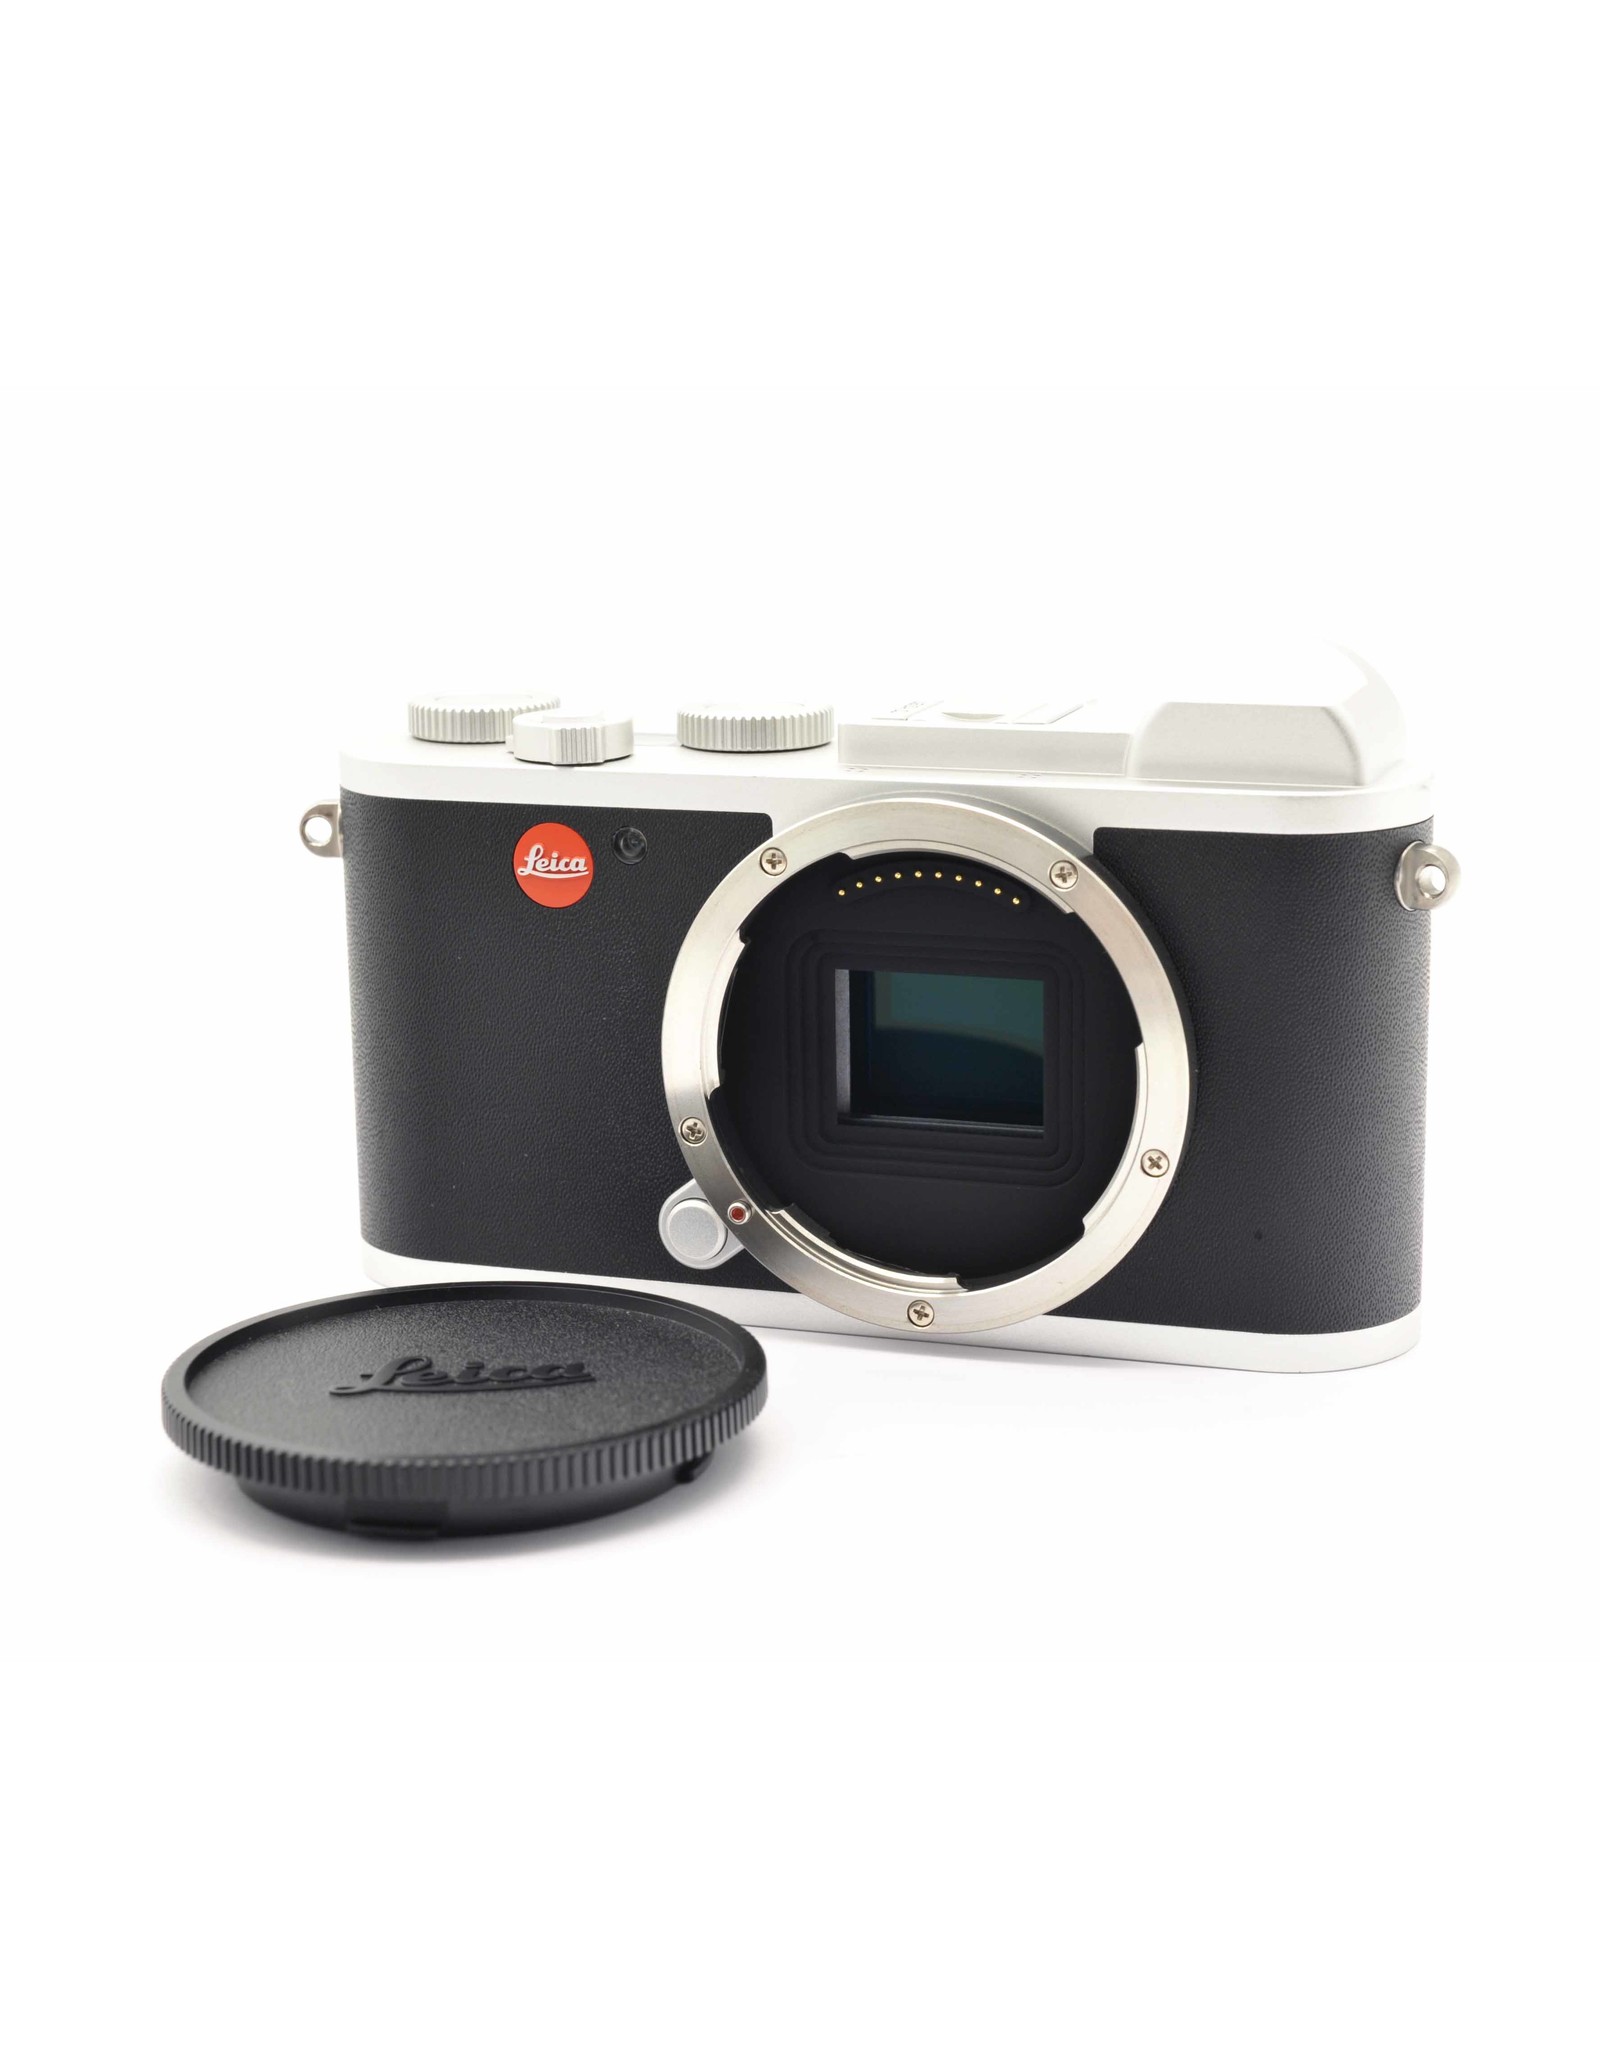 Leica Leica CL Silver + 18-56mm f3.5-5.6 Vario-Elmar-TL ASPH   ALC127601